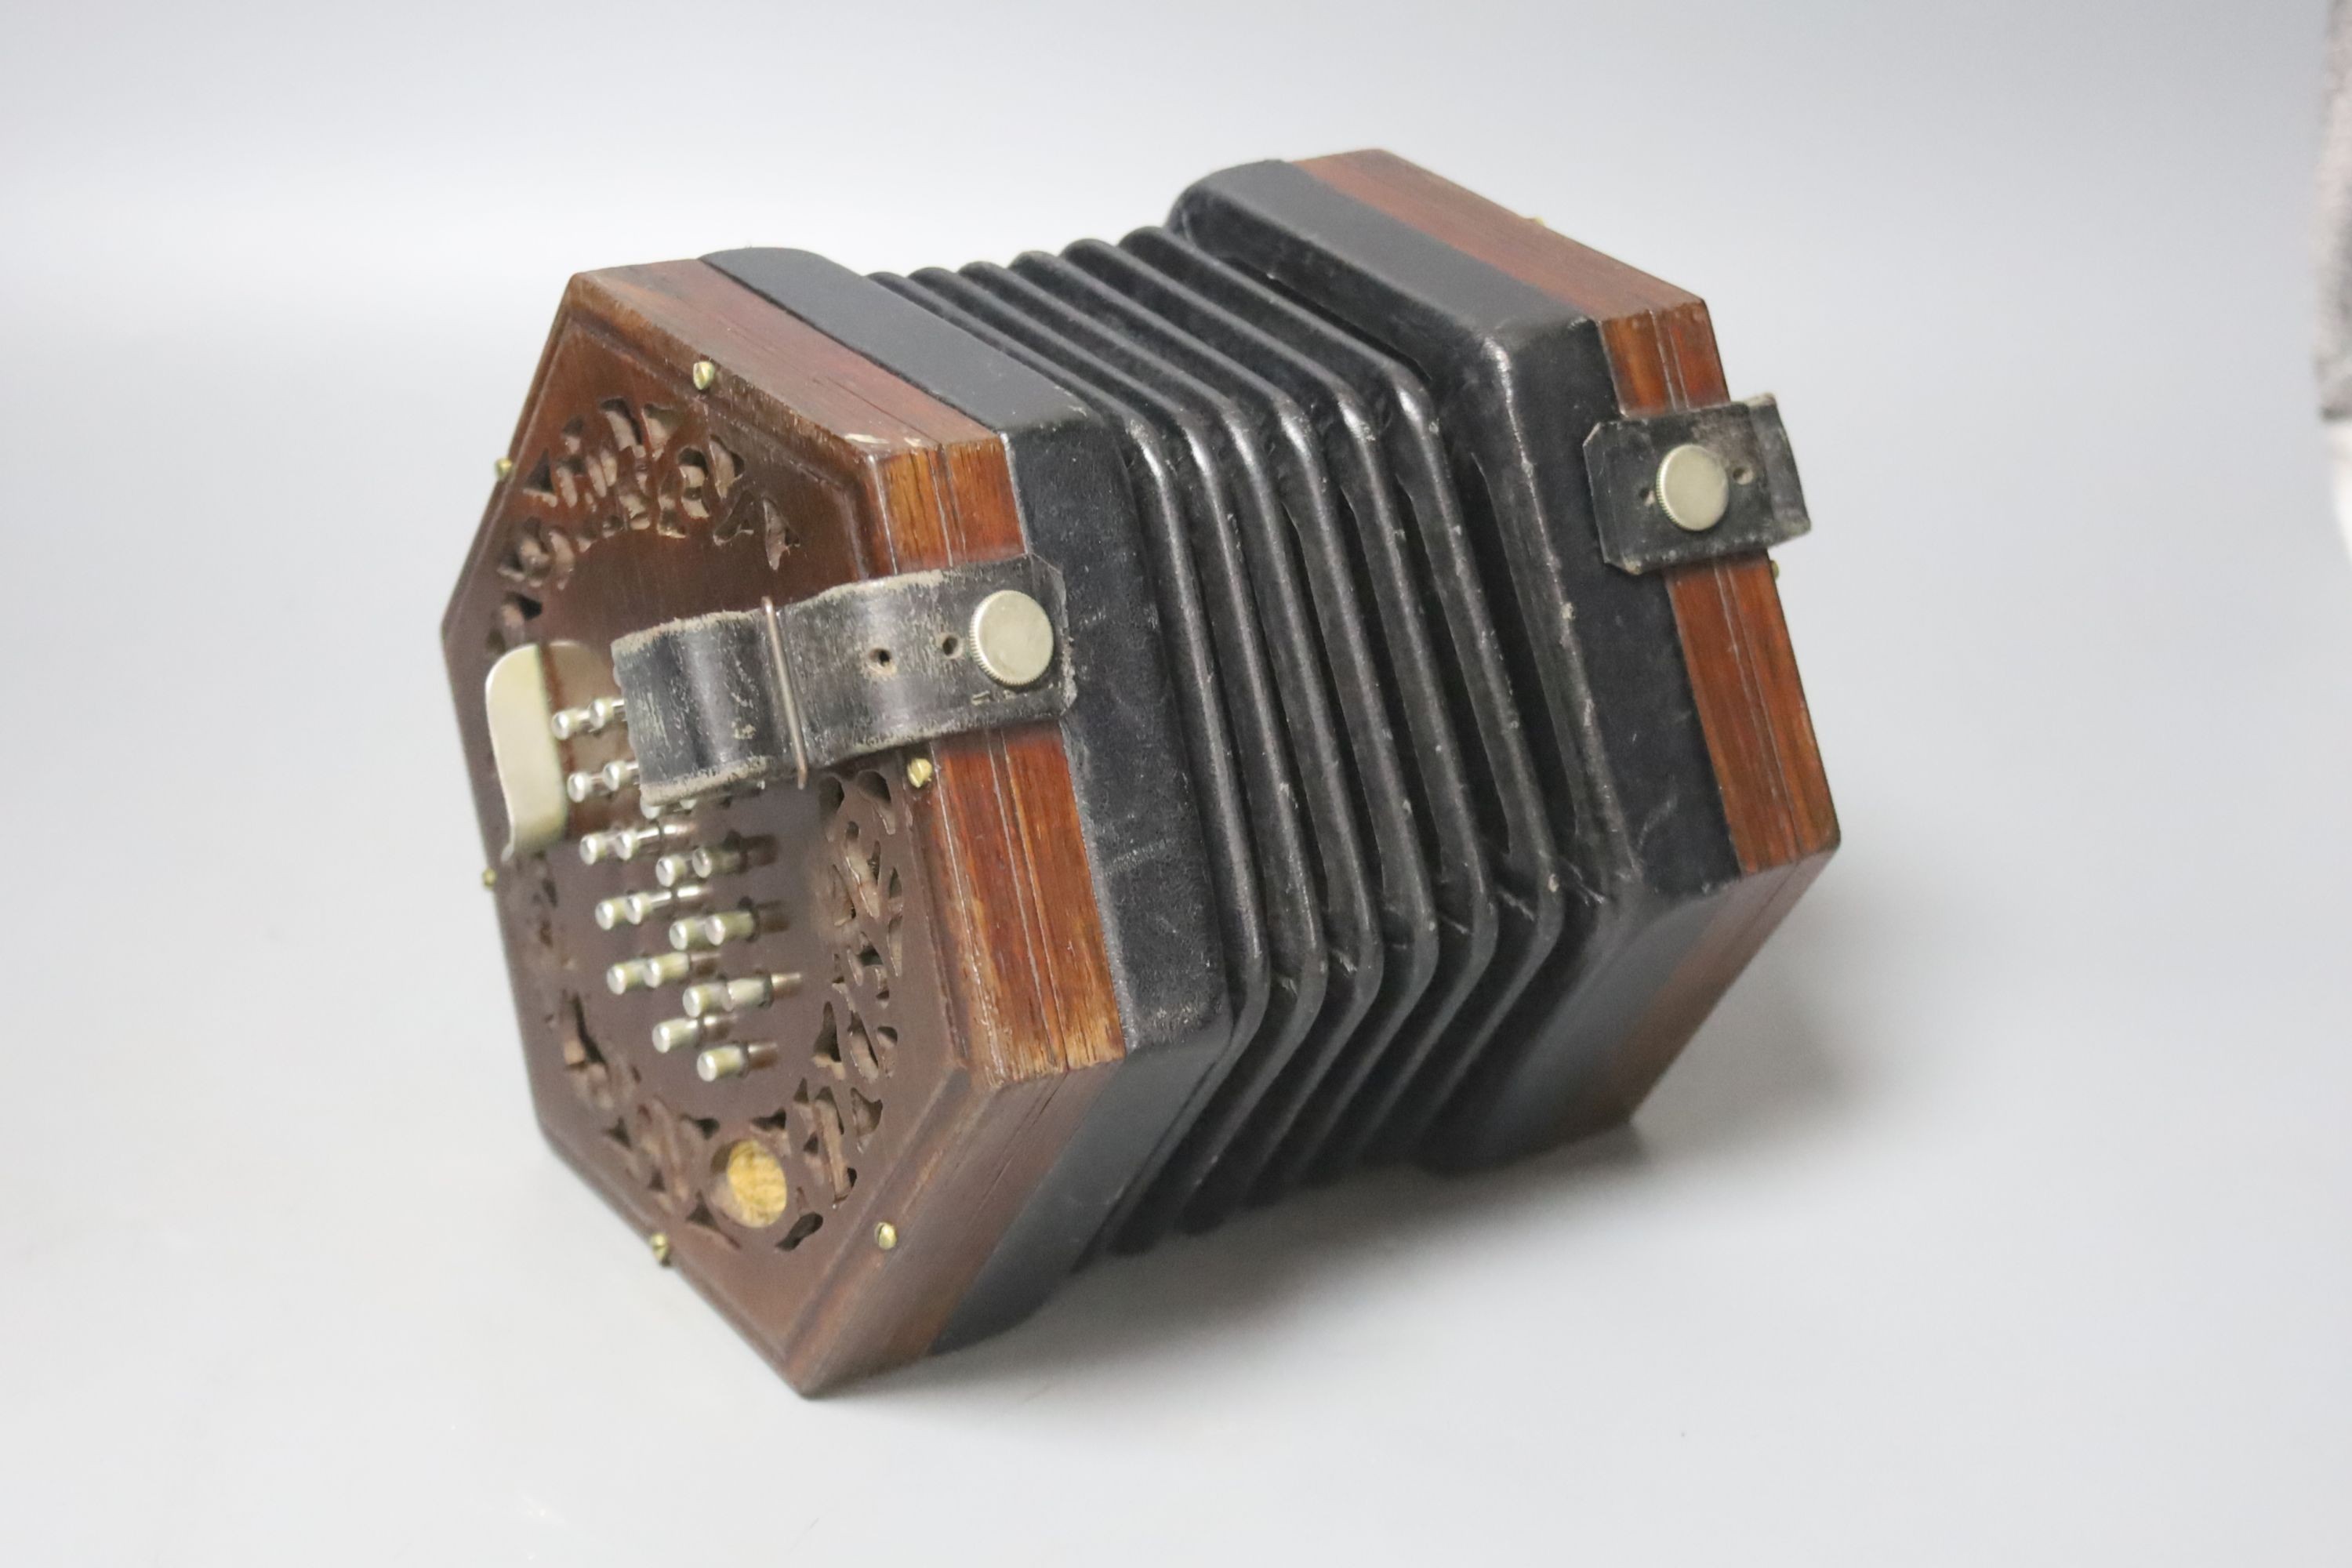 A Wheatstone cased concertina